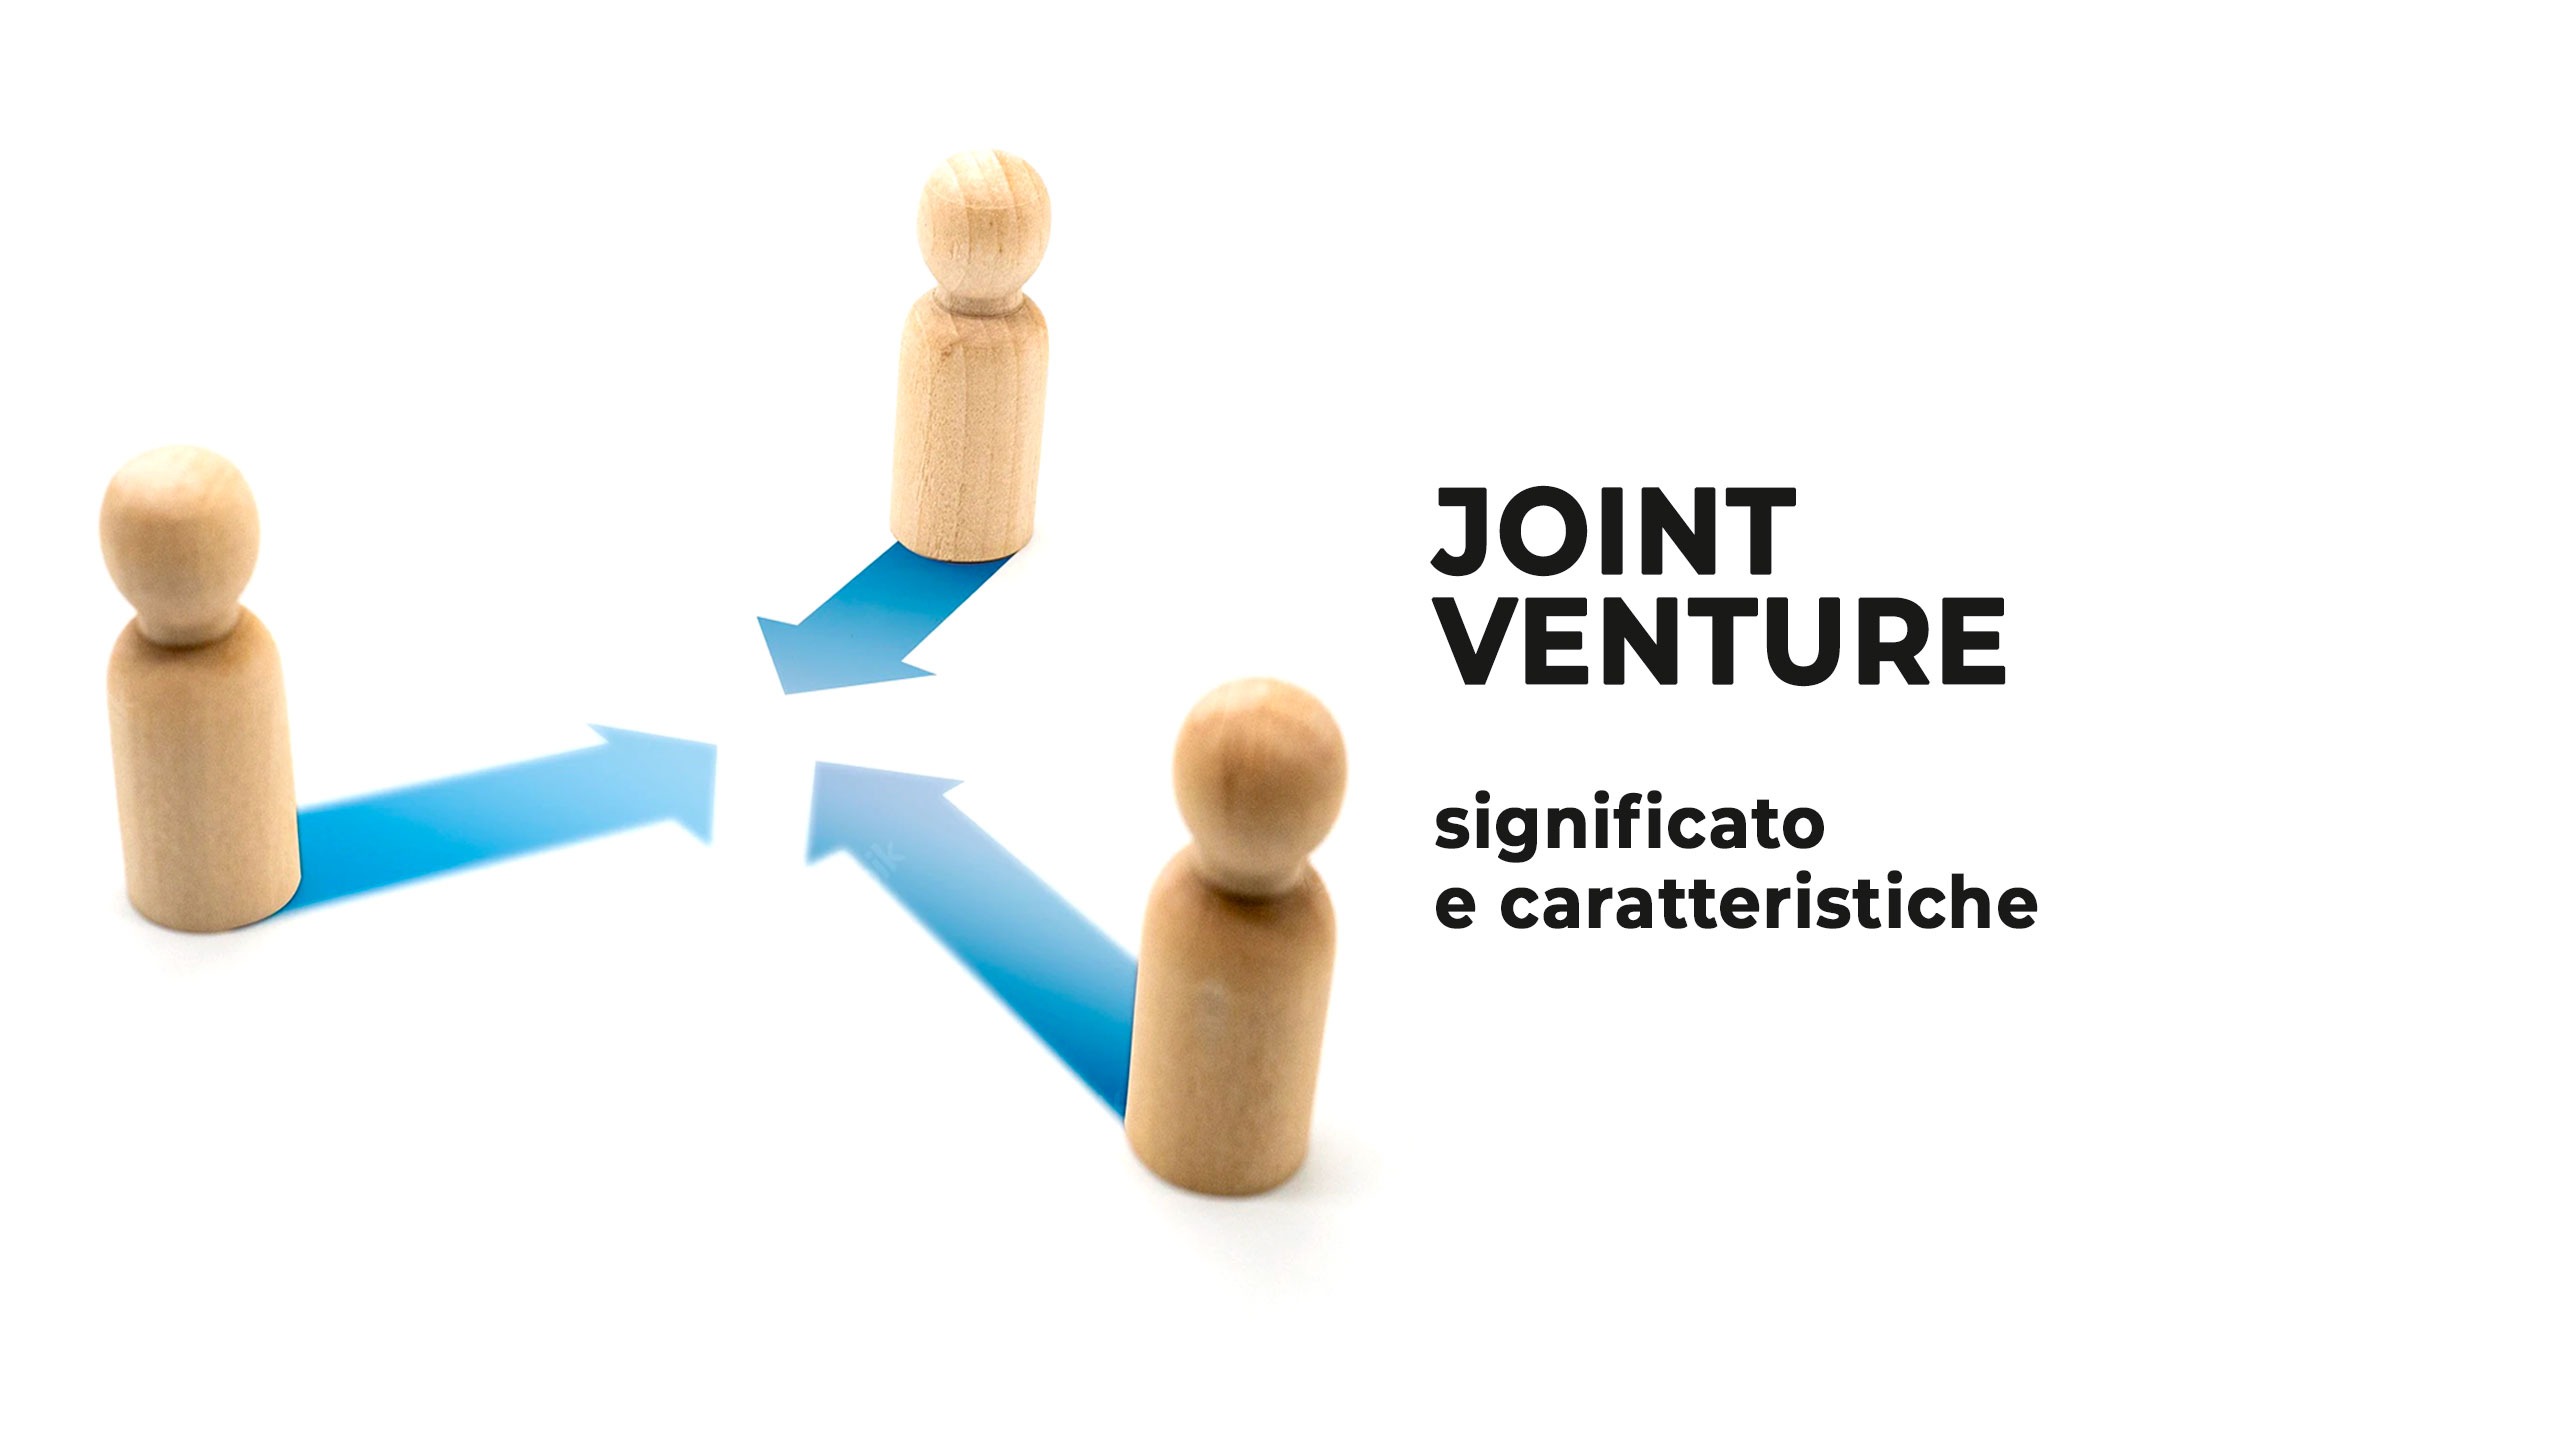 Joint Venture significato e caratteristiche